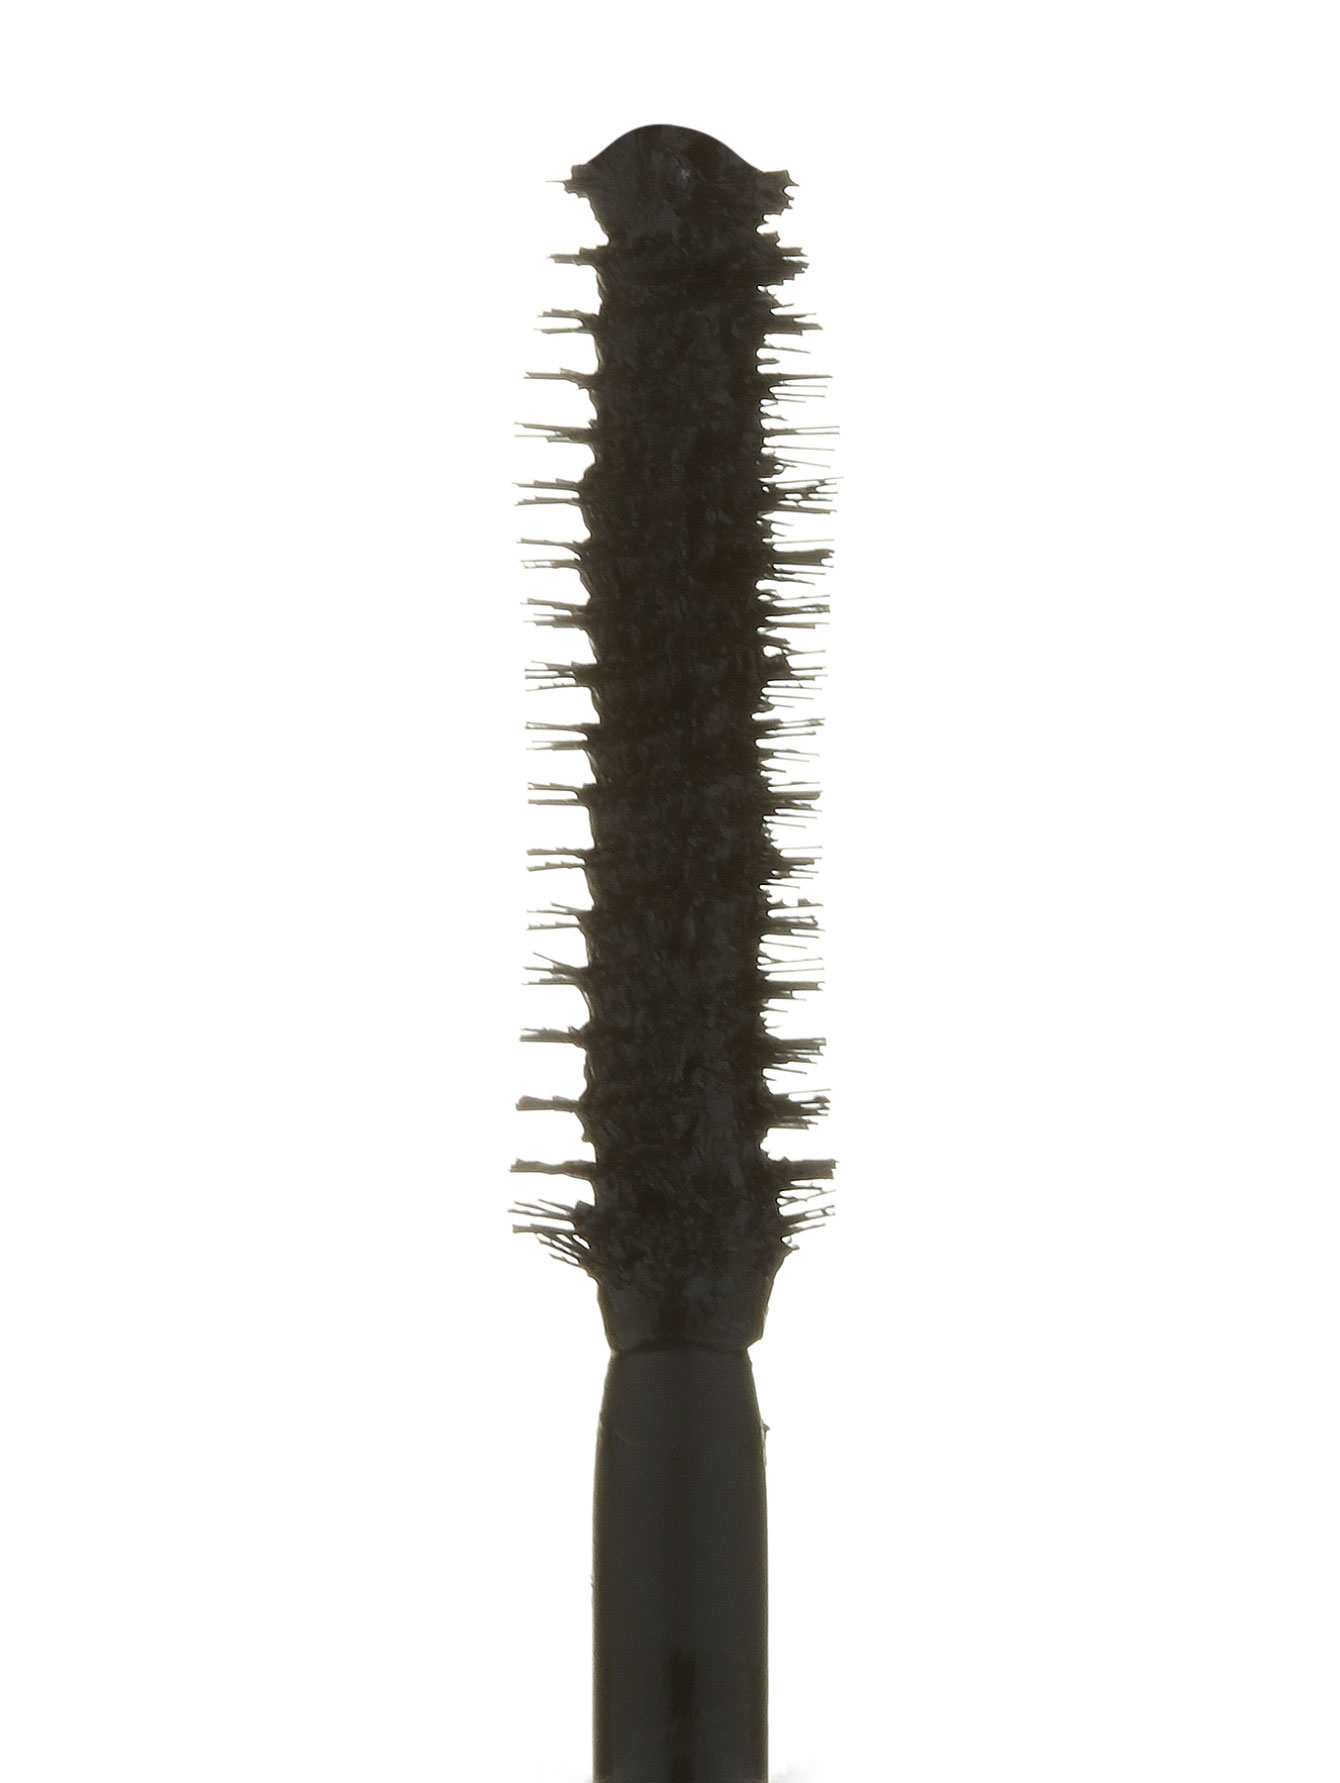  Тушь для ресниц водостойкая - №01 Черный, Hypnose Mascara - Общий вид